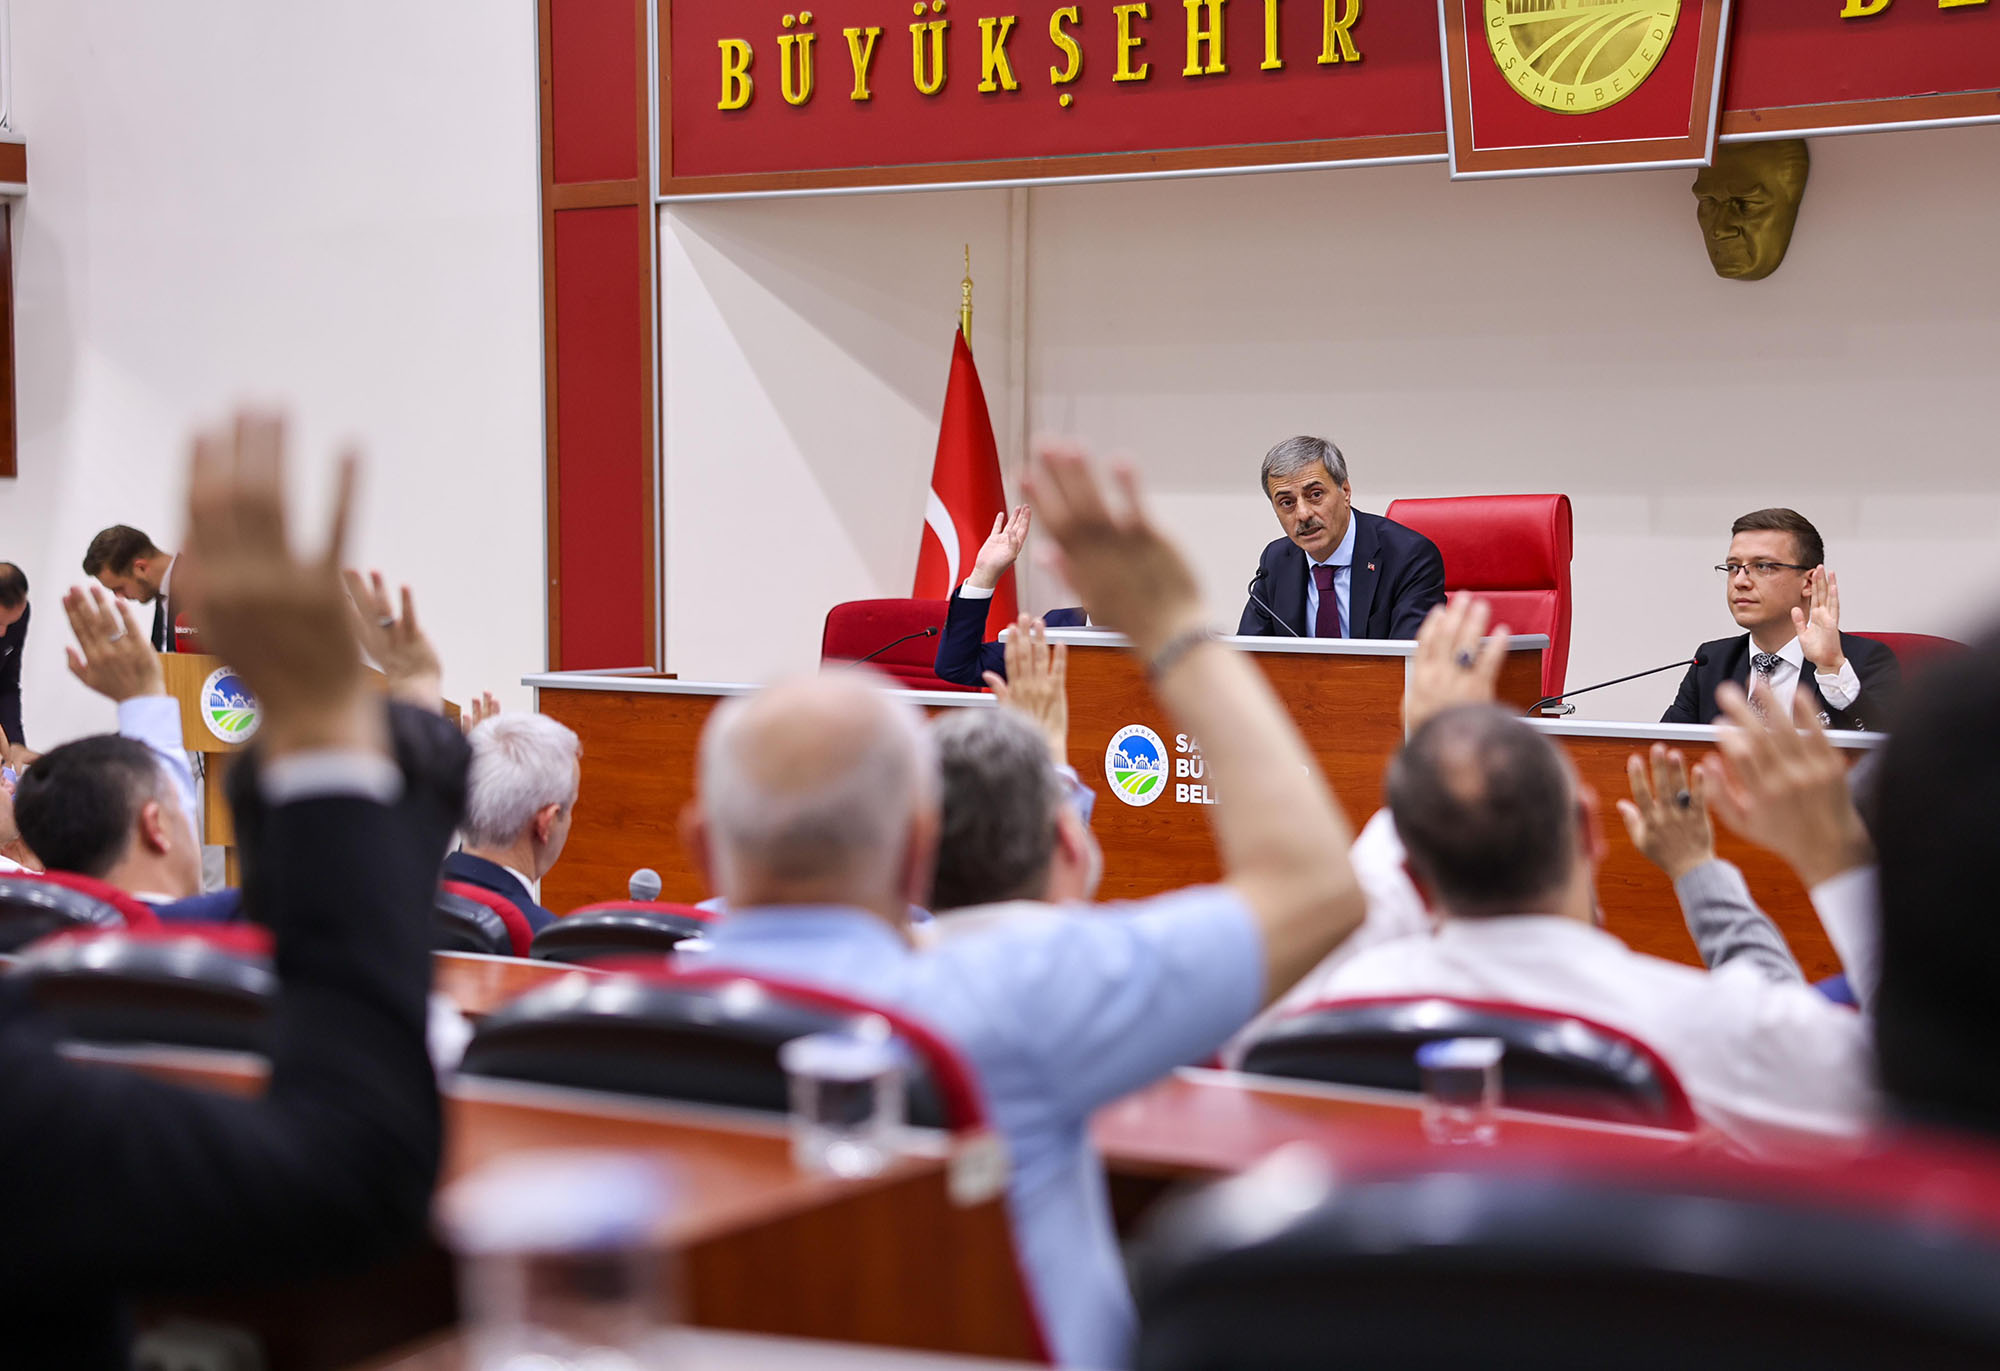 Büyükşehir’in 150 Milyon Tl'lik Yatırımına Meclis Onayı 6